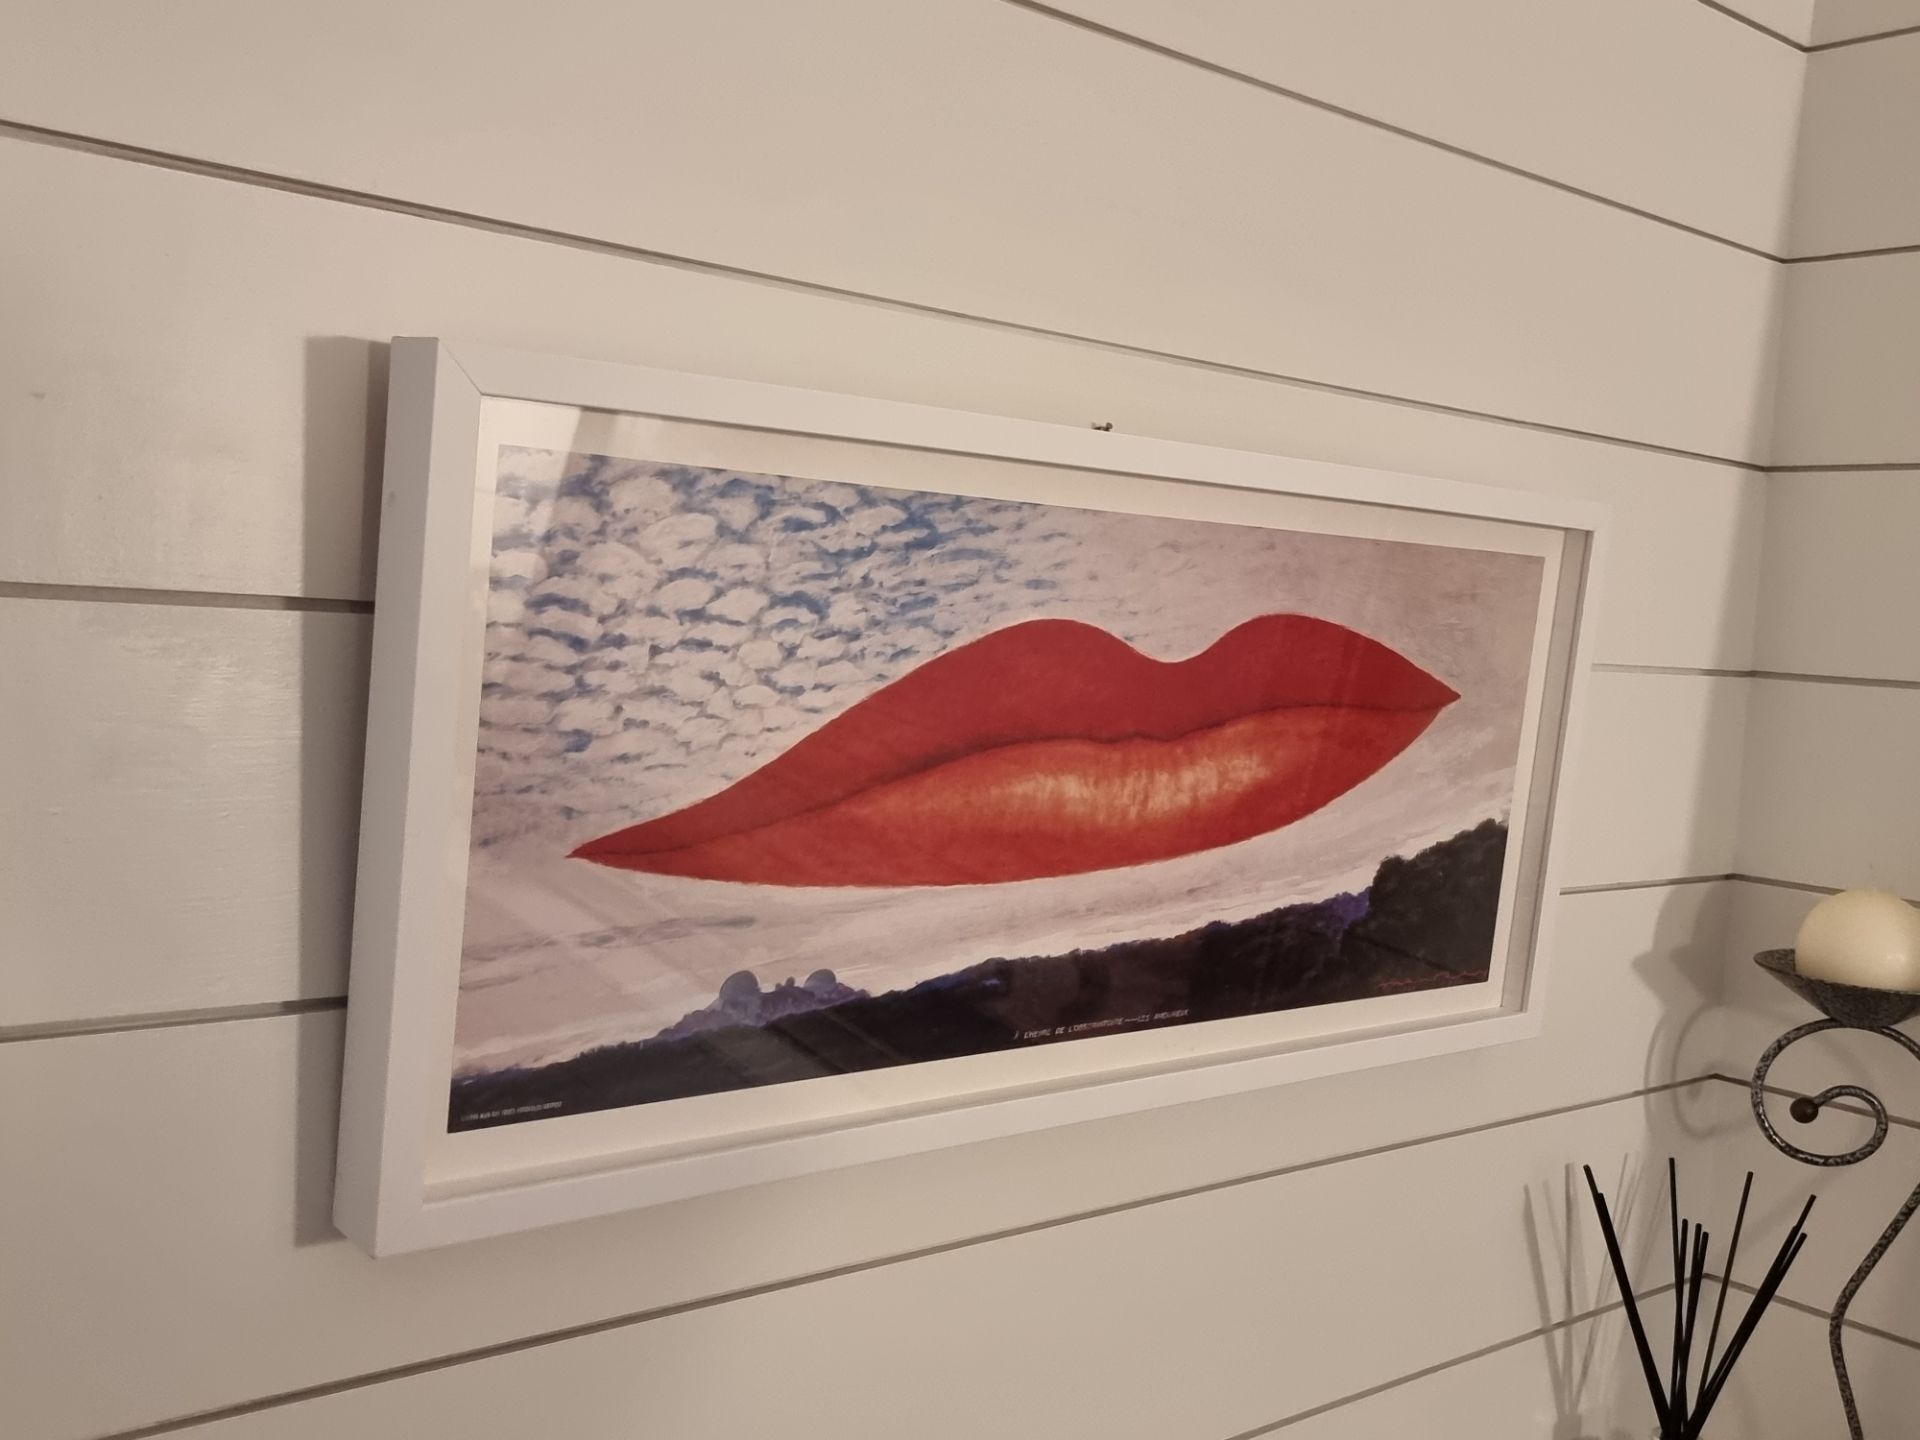 Art print A l'heure de l'observatoire - Les amoureux after Man Ray (1890-1976) in glazed 67 x 30cm